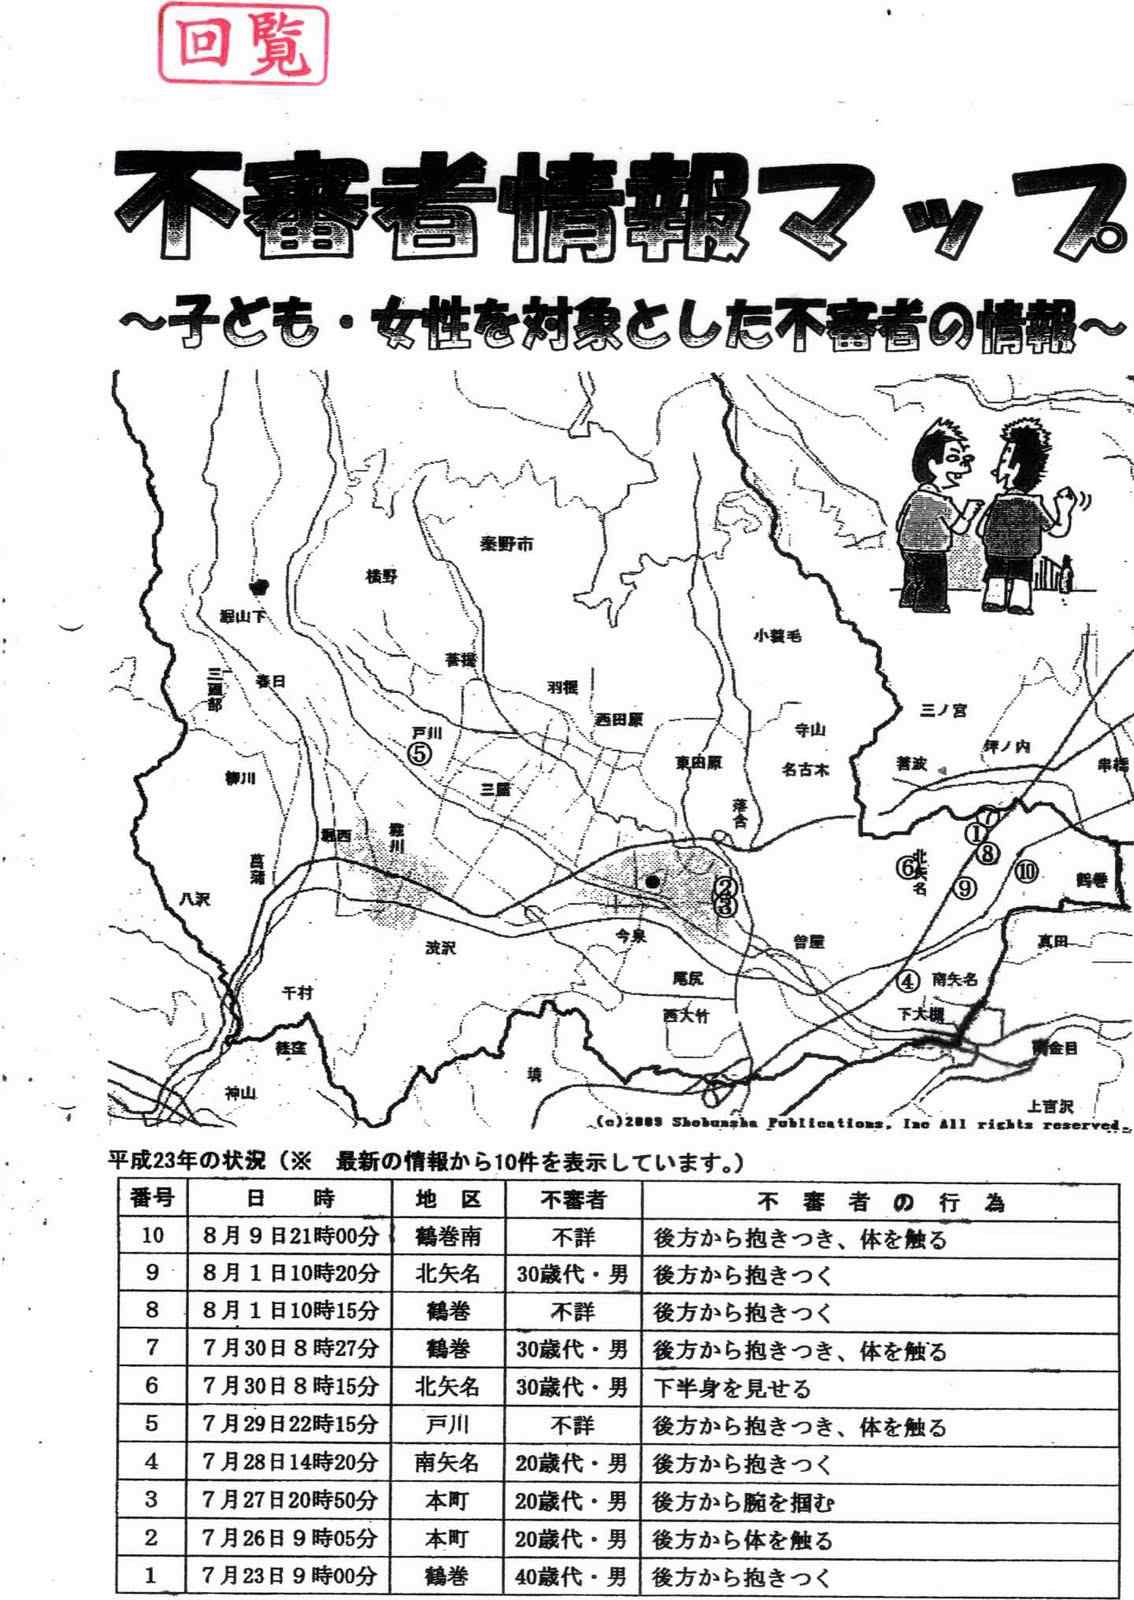 【그림 Ⅲ-2-4】 기타야나히노데(北矢名日の出)자치회 수상한 자 지도